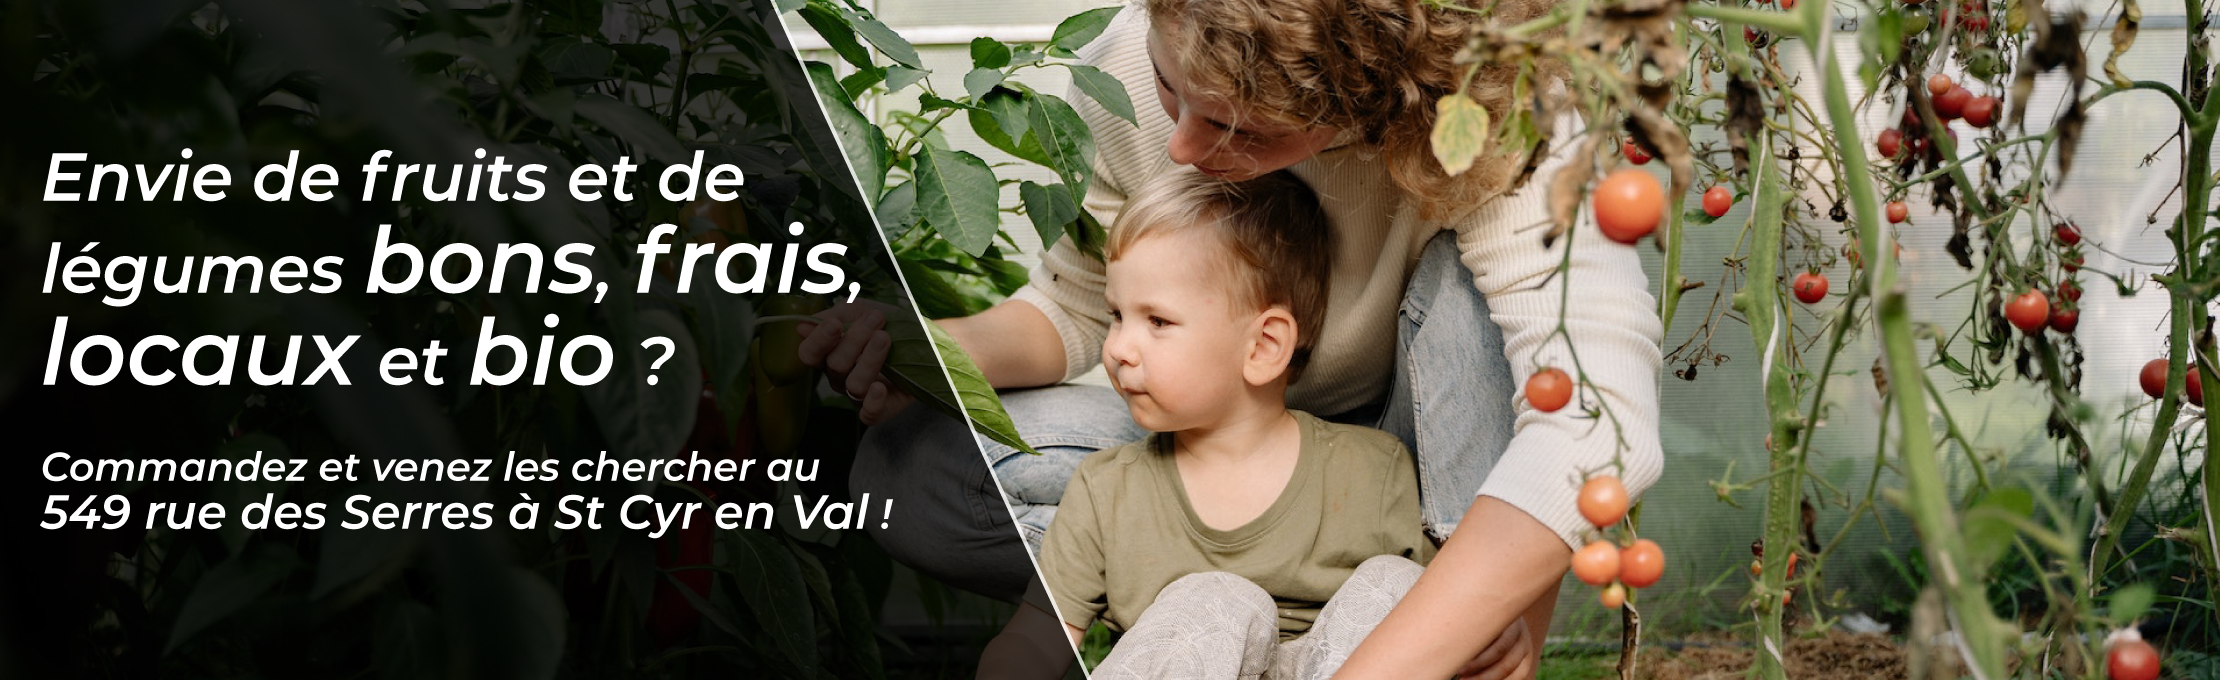 Envie de fruits et légumes bons, frais, locaux et bio ? Venez les chercher à Serres Bio Val !